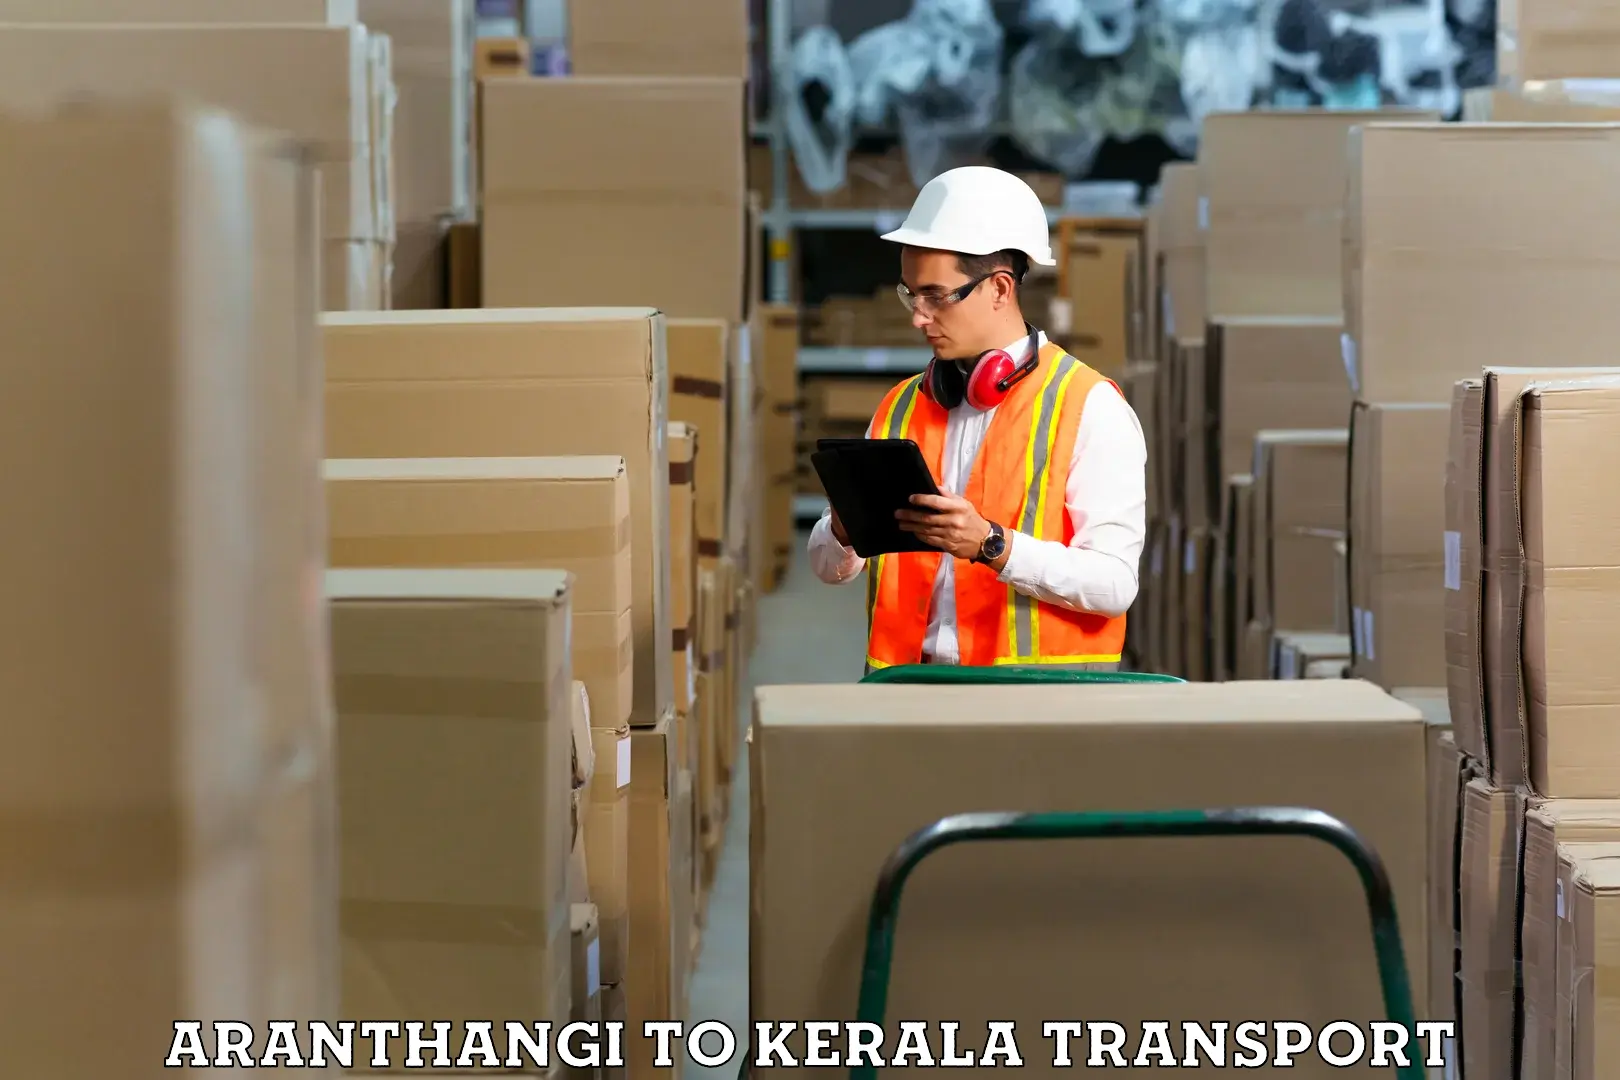 Express transport services Aranthangi to Ponnani